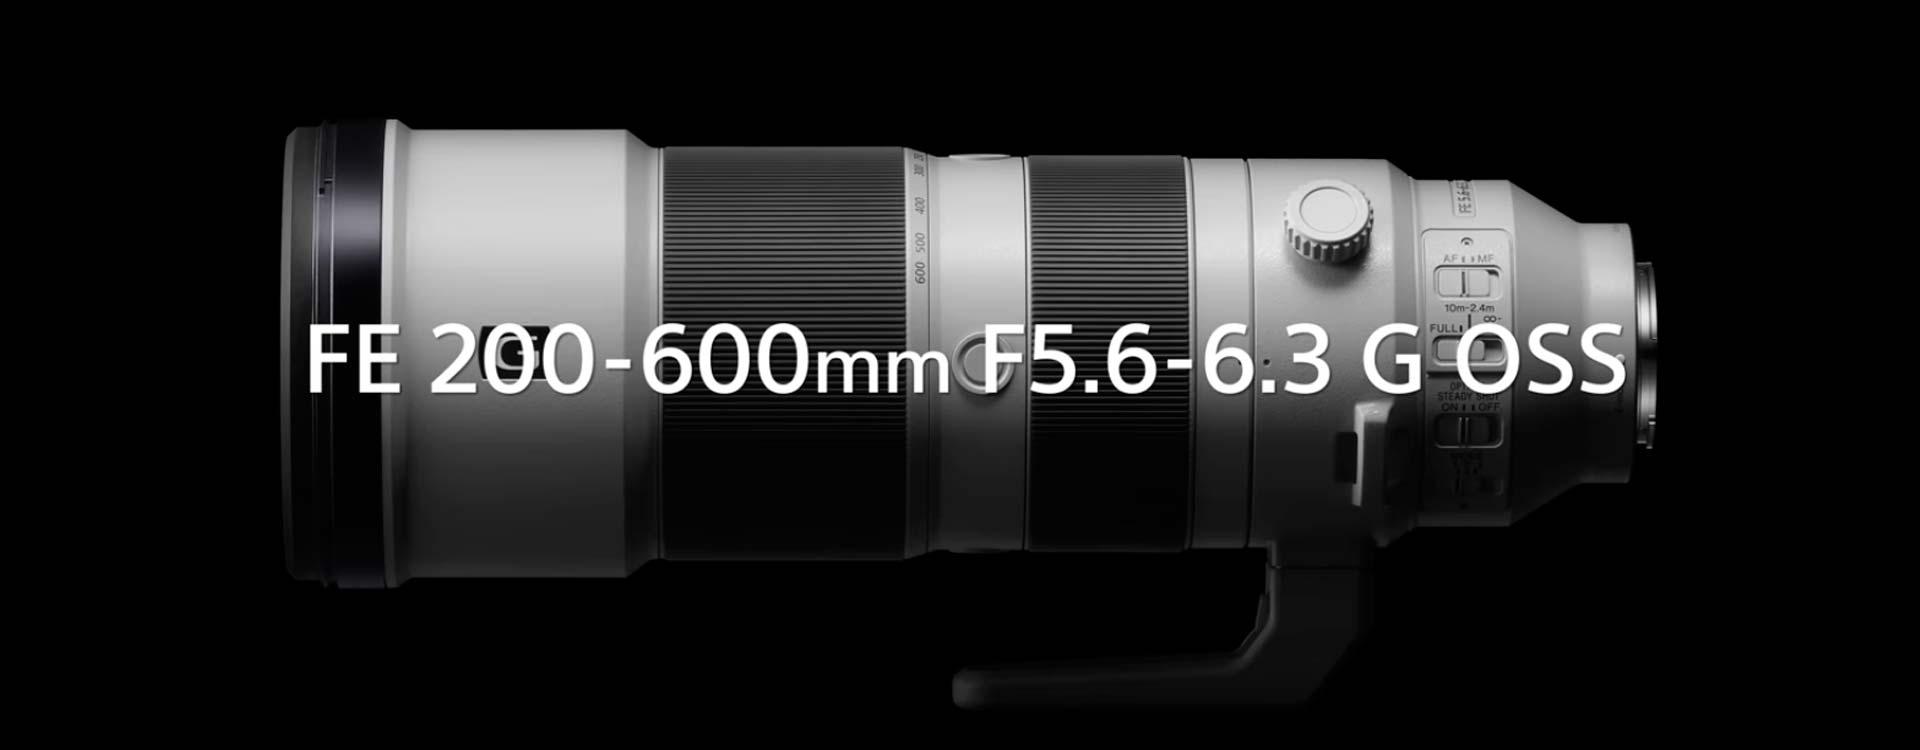 Nuevo teleobjetivo Sony FE 200-600mm f5.6-6.3 G OSS anunciado hoy